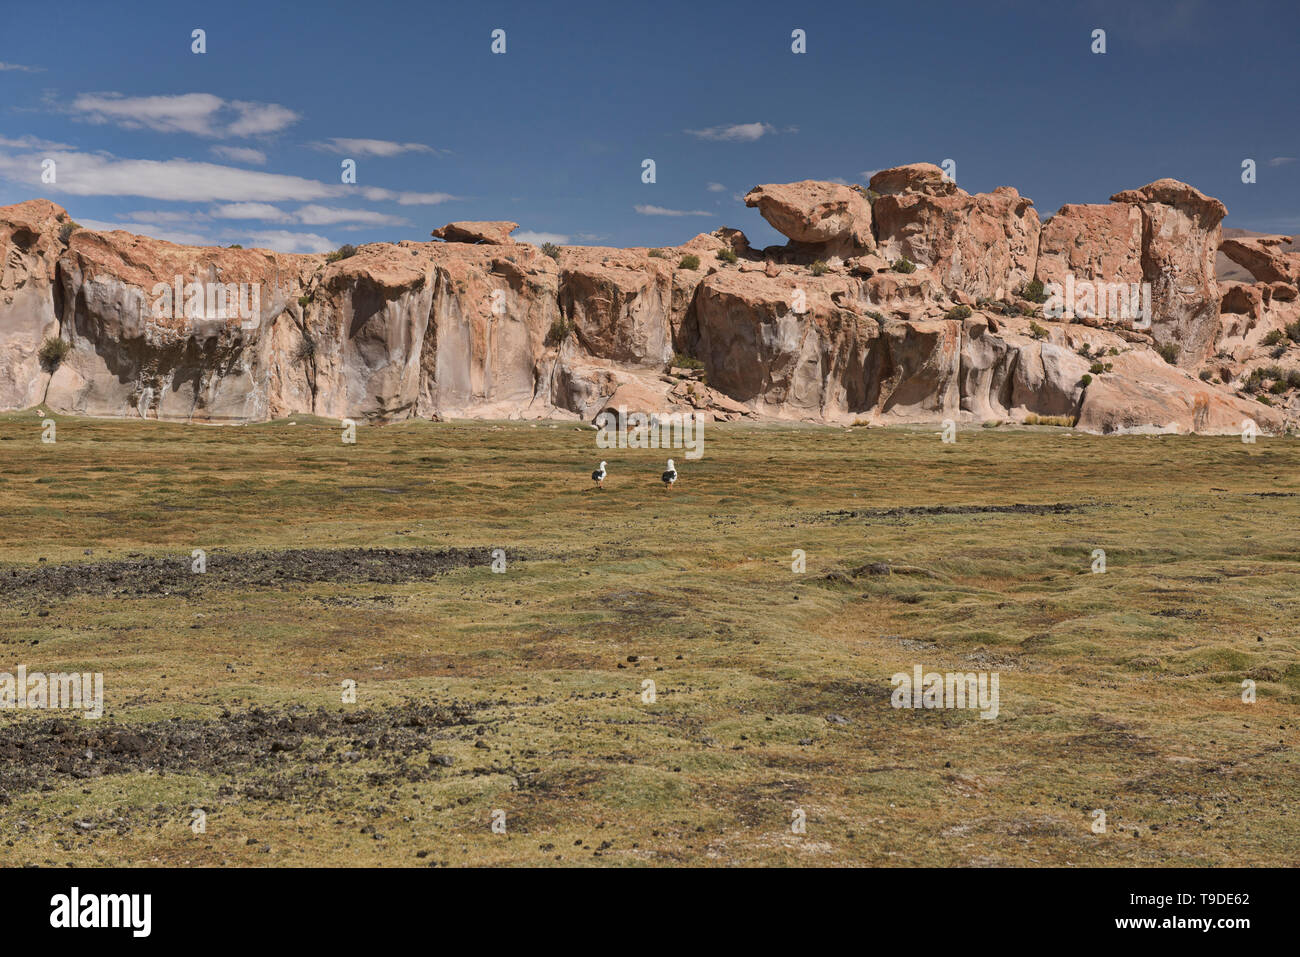 Andean geese (Neochen melanoptera) on the altiplano, Salar de Uyuni, Bolivia Stock Photo